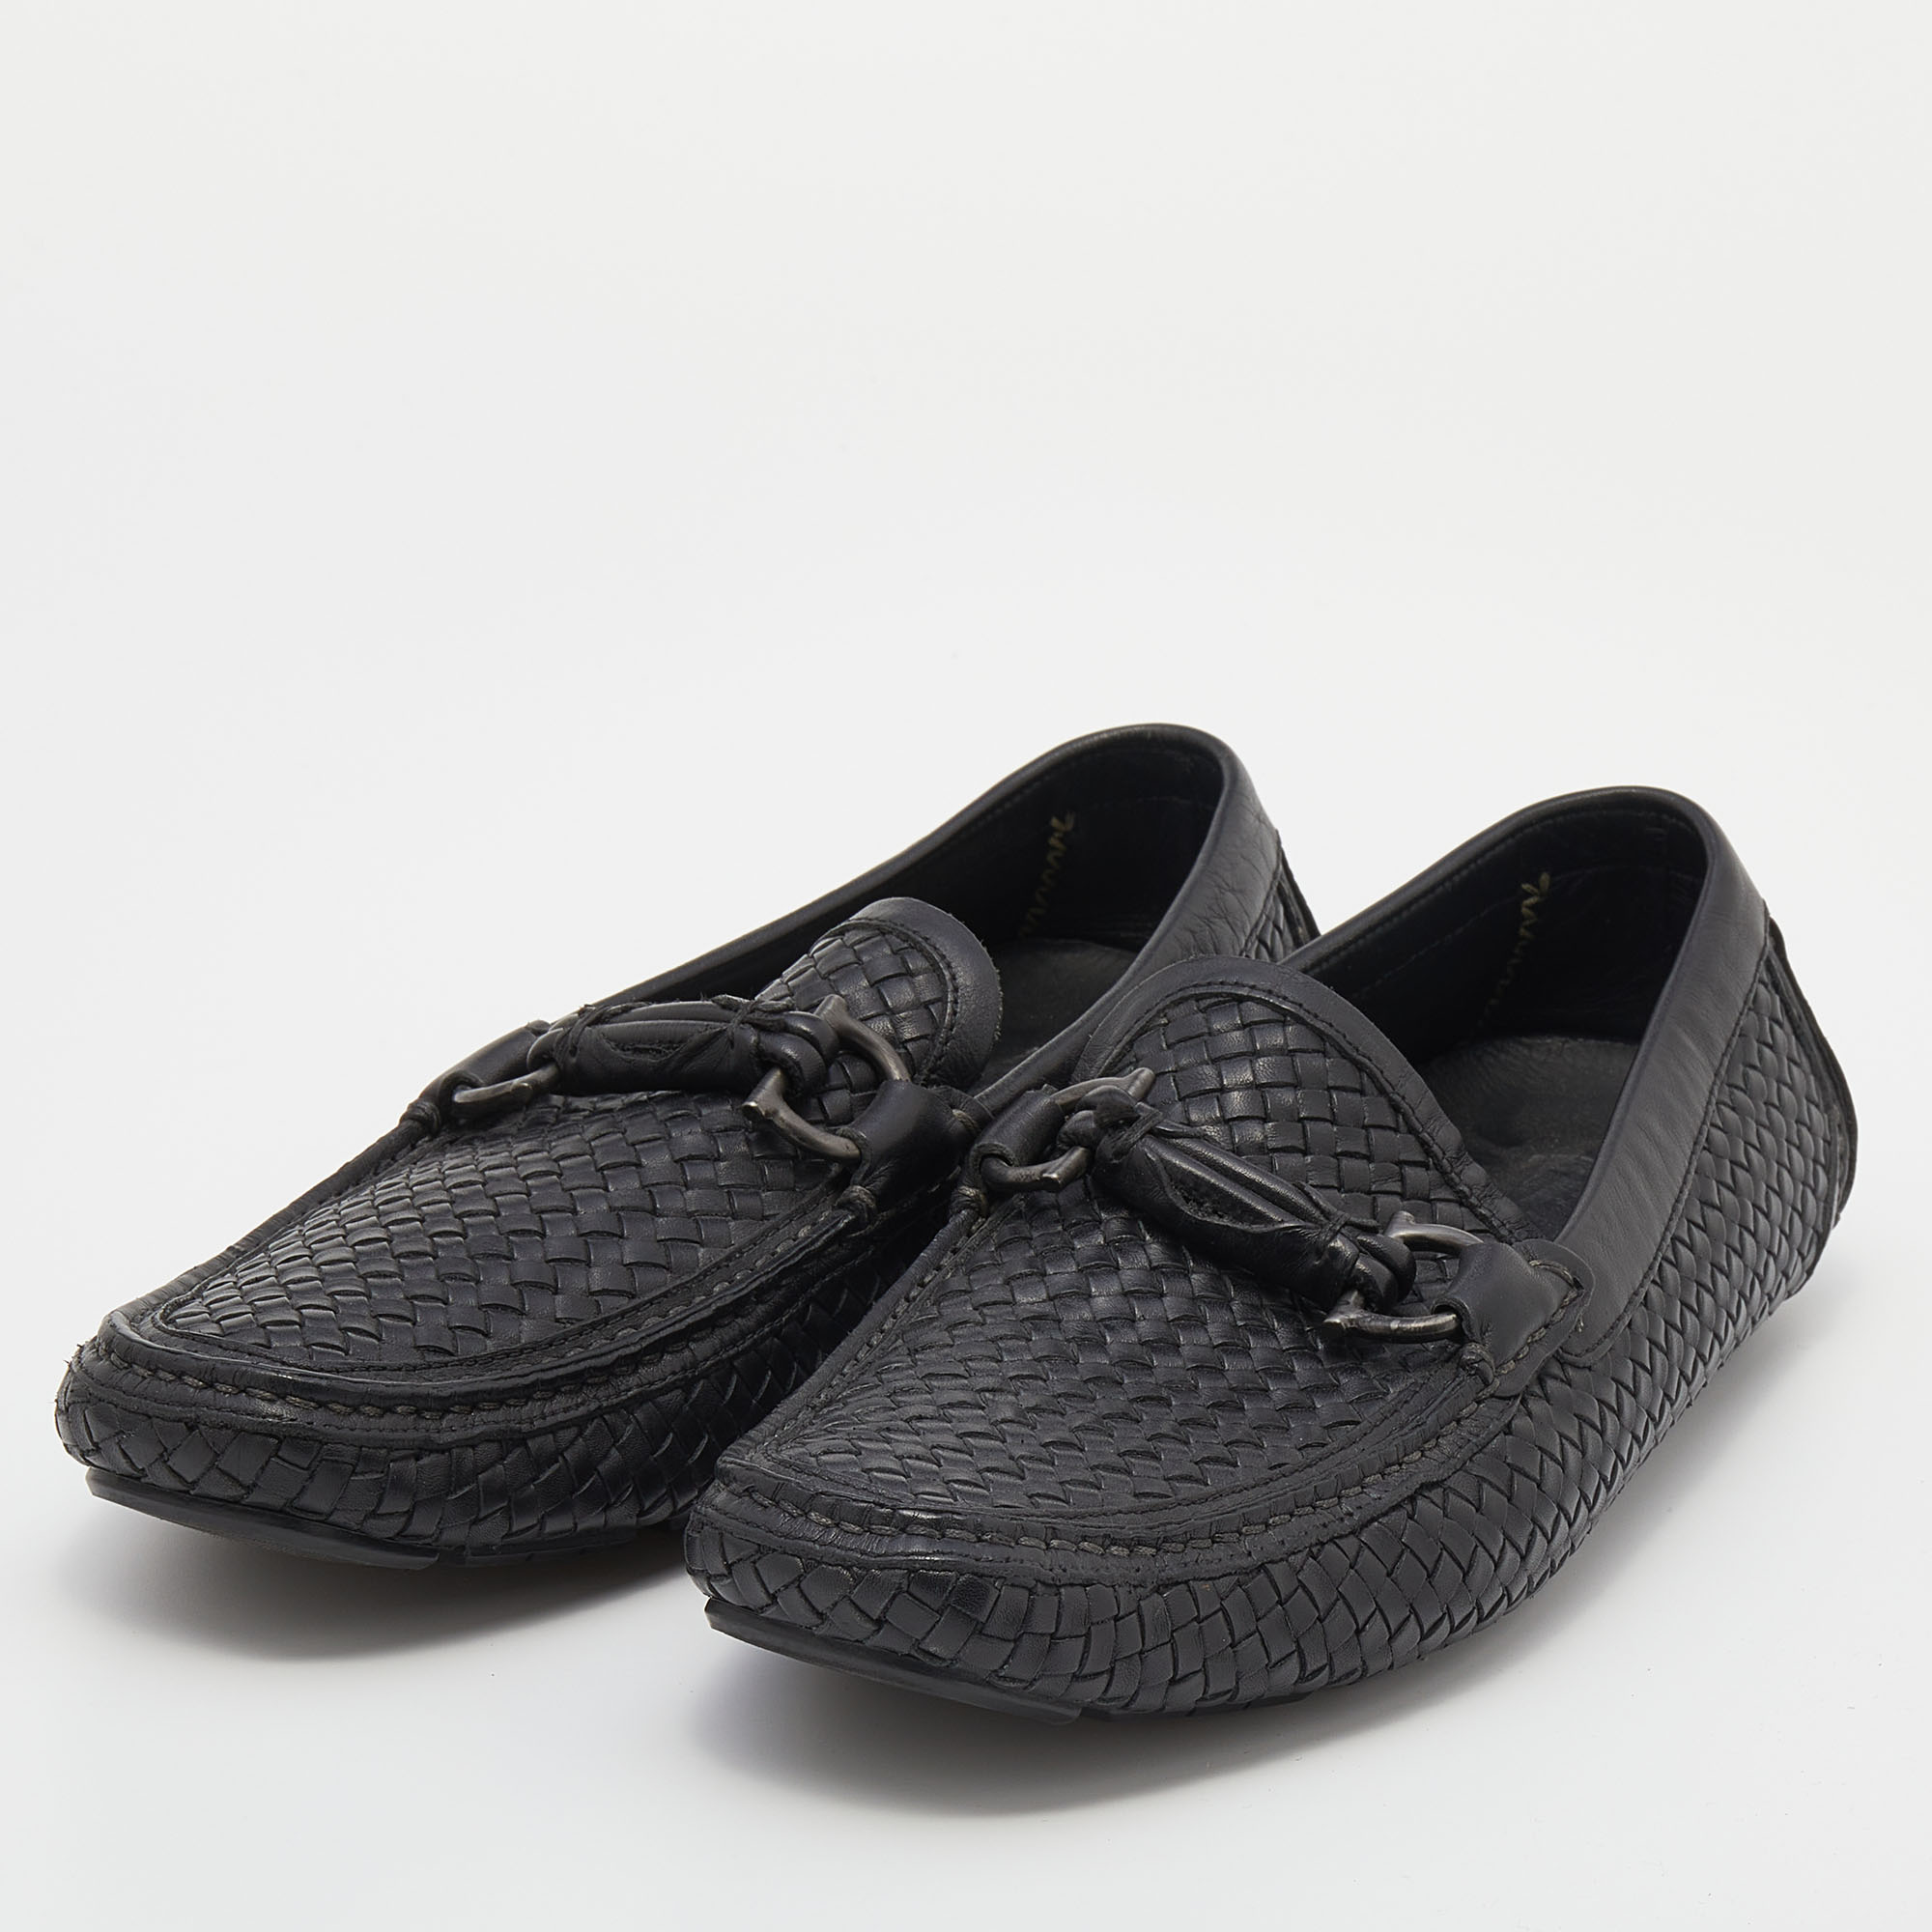 

Salvatore Ferragamo Black Woven Leather Parigi Gancini Slip On Loafers Size